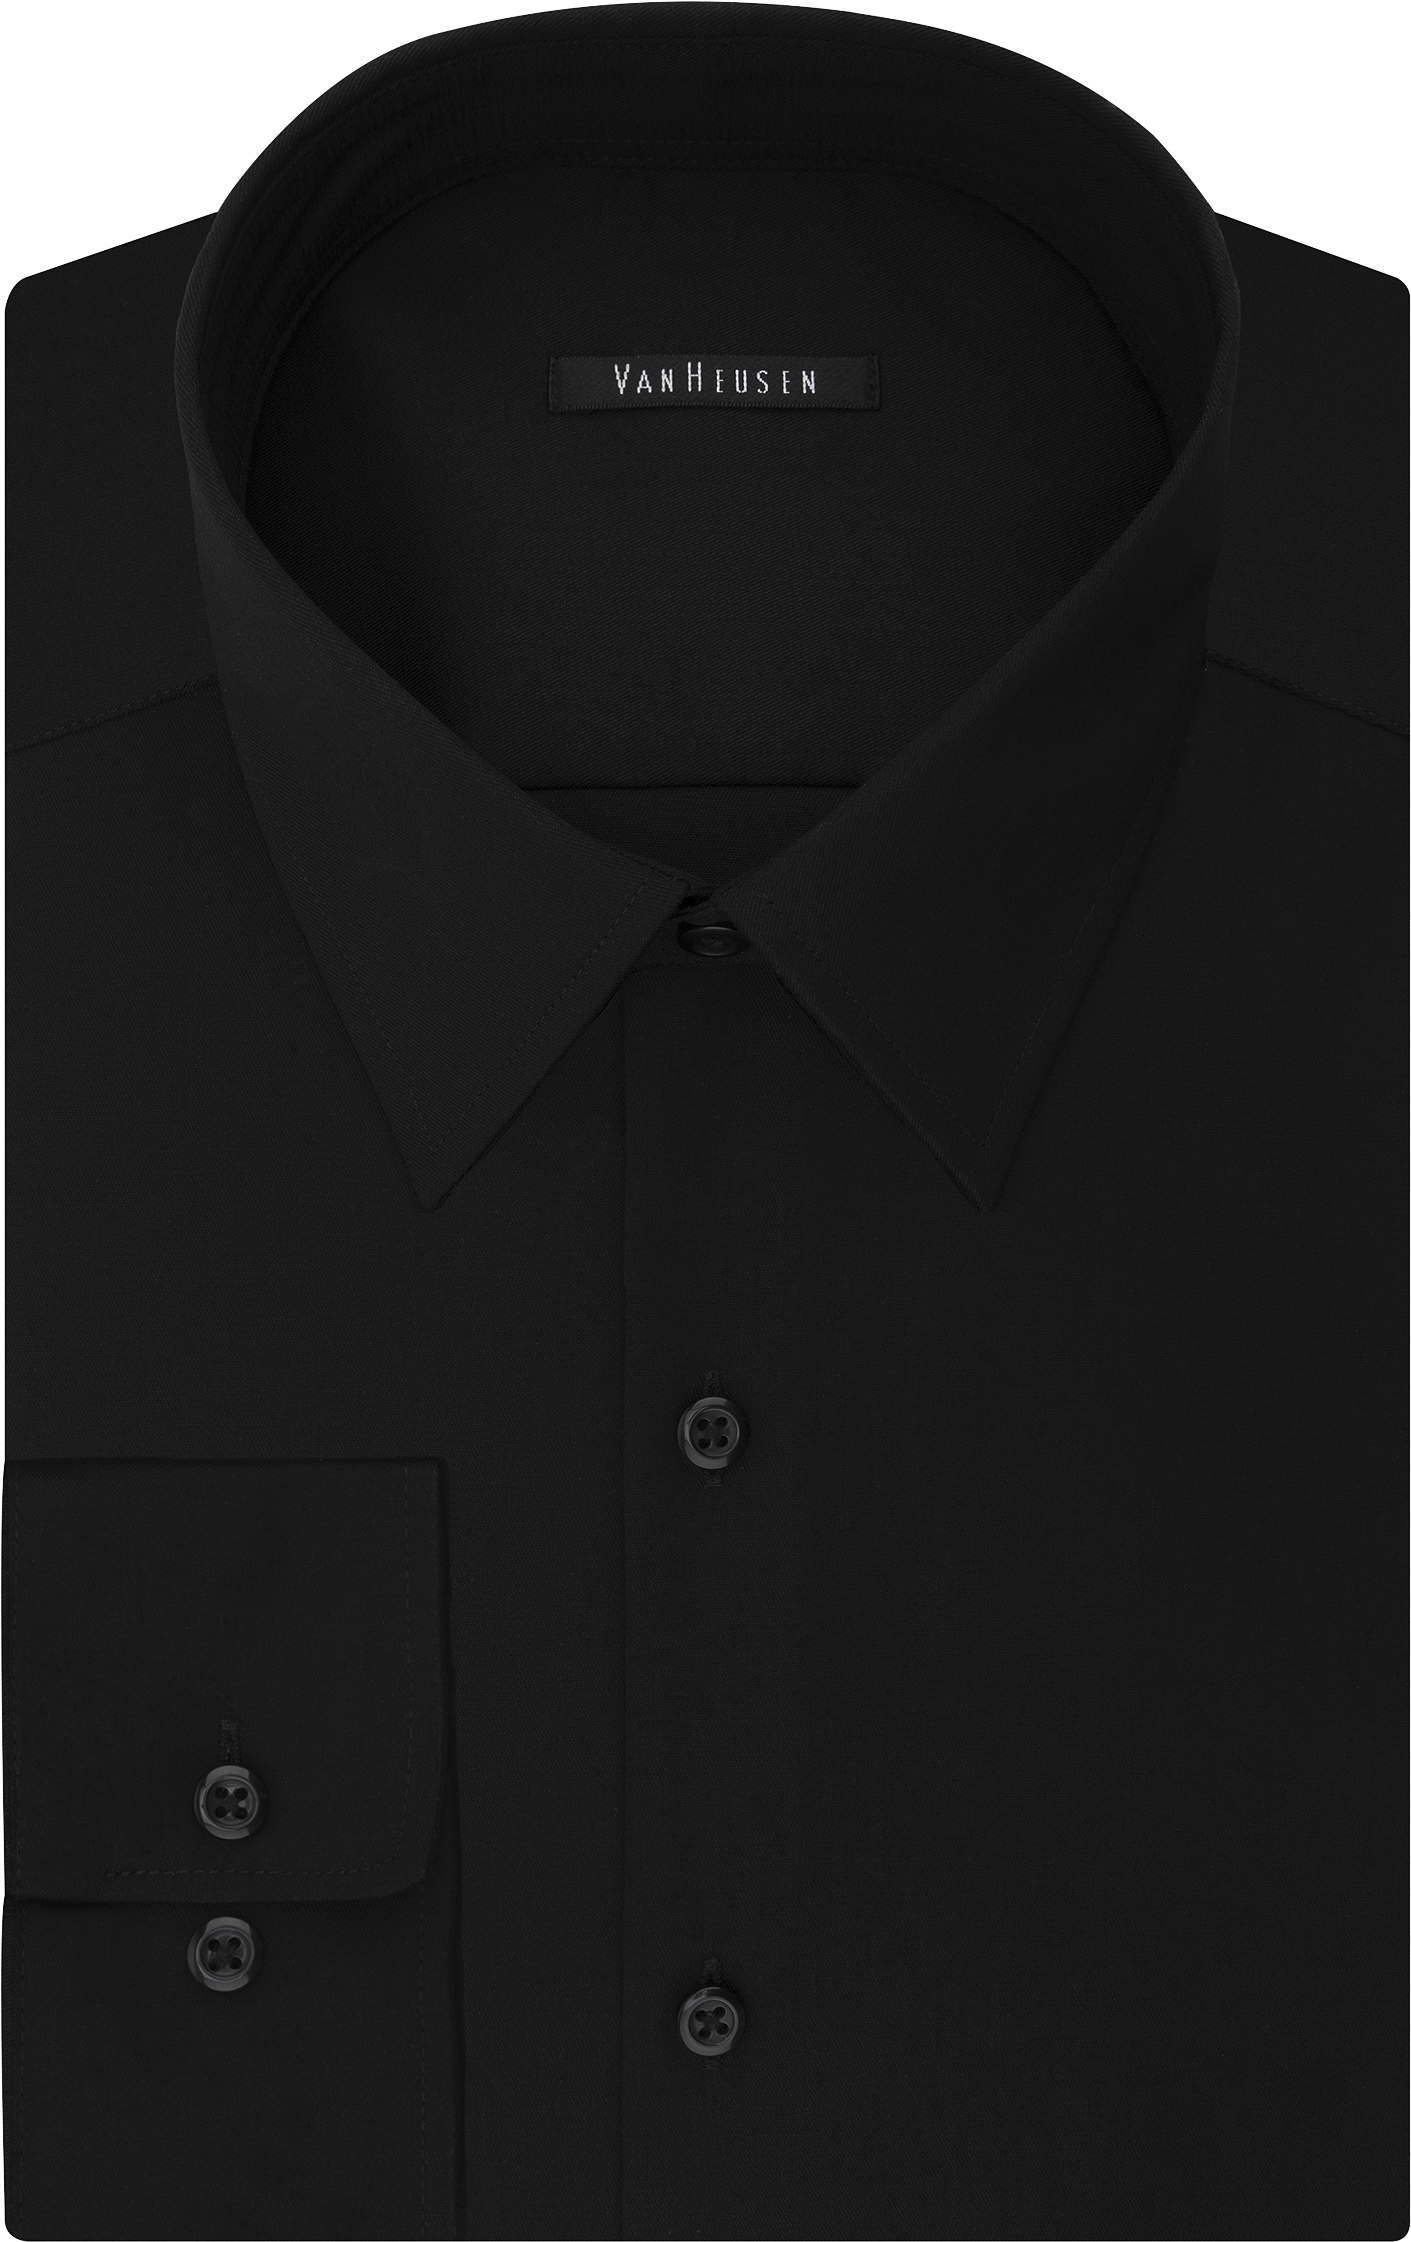 Van Heusen Flex Collar Black Slim Fit Dress Shirt - Men's Sale | Men's ...